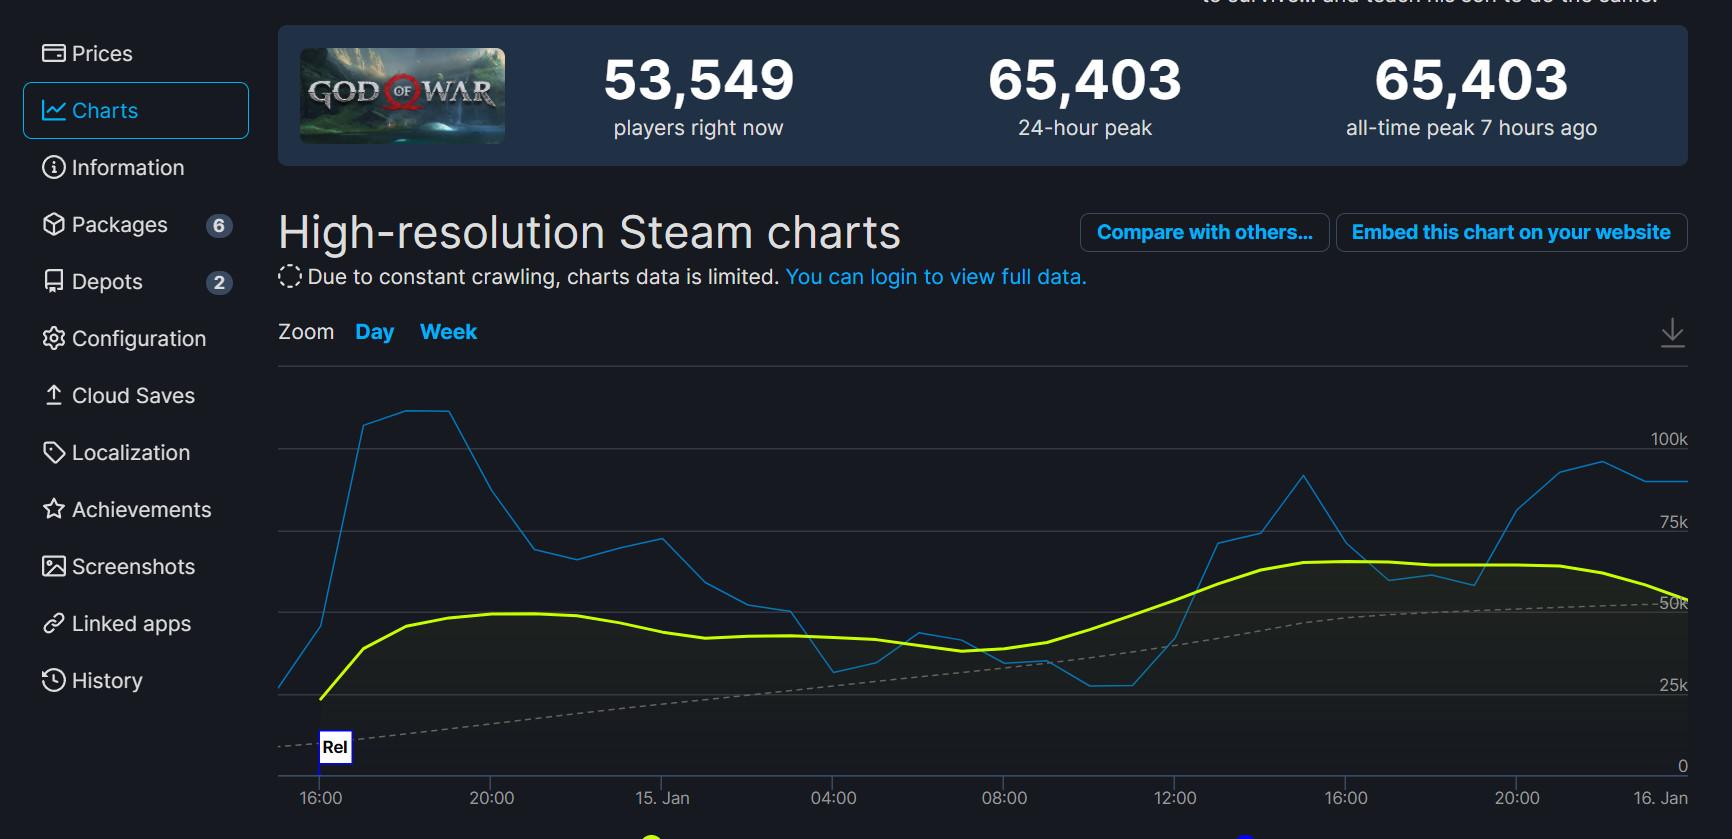 破紀錄《GOD OF WAR》Steam ONLINE峰值超6.5萬